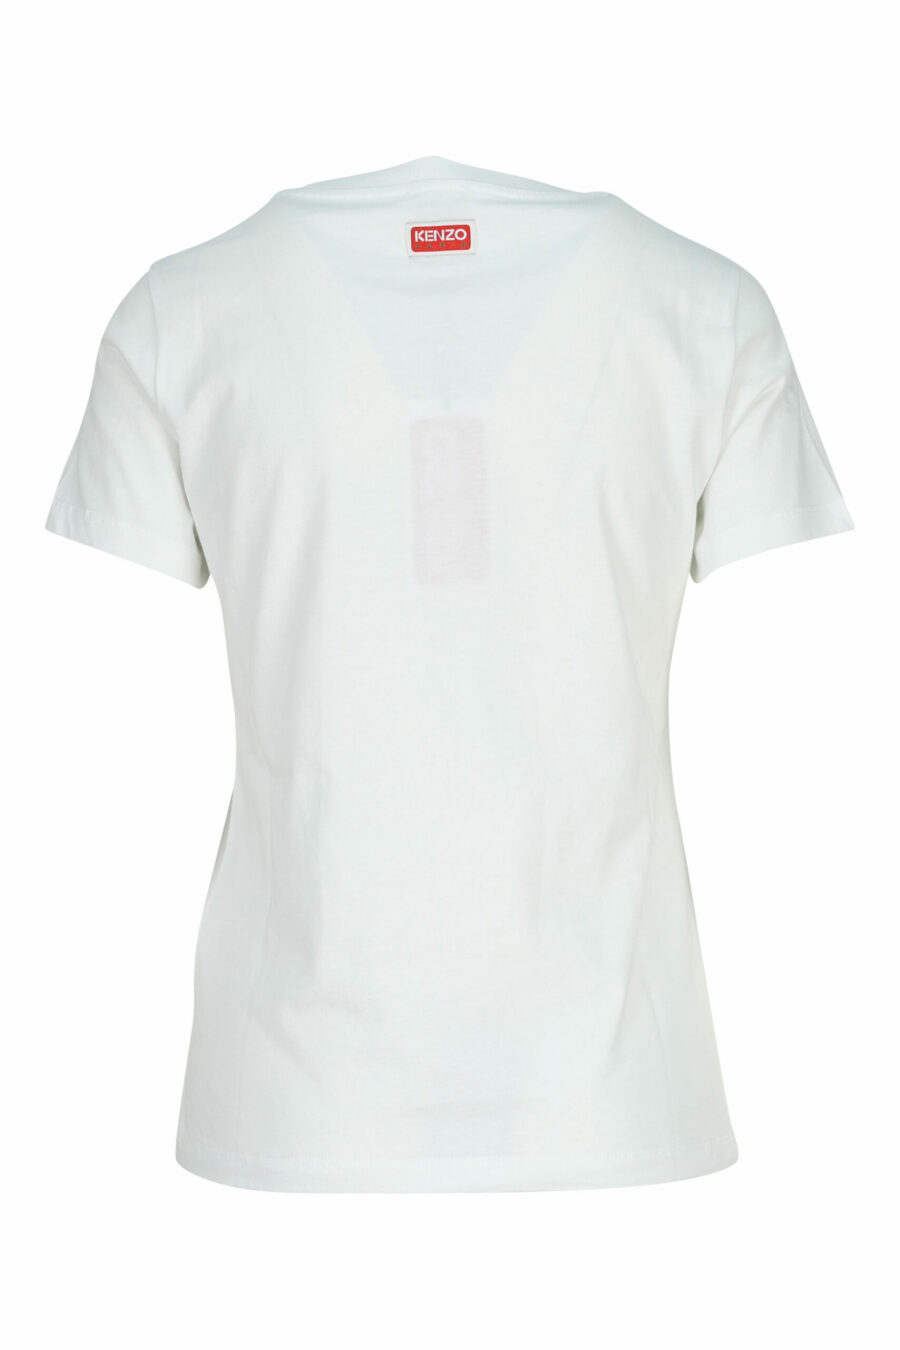 Weißes T-Shirt mit Mini-Logo "kenzo elephant" - 3612230620117 1 skaliert